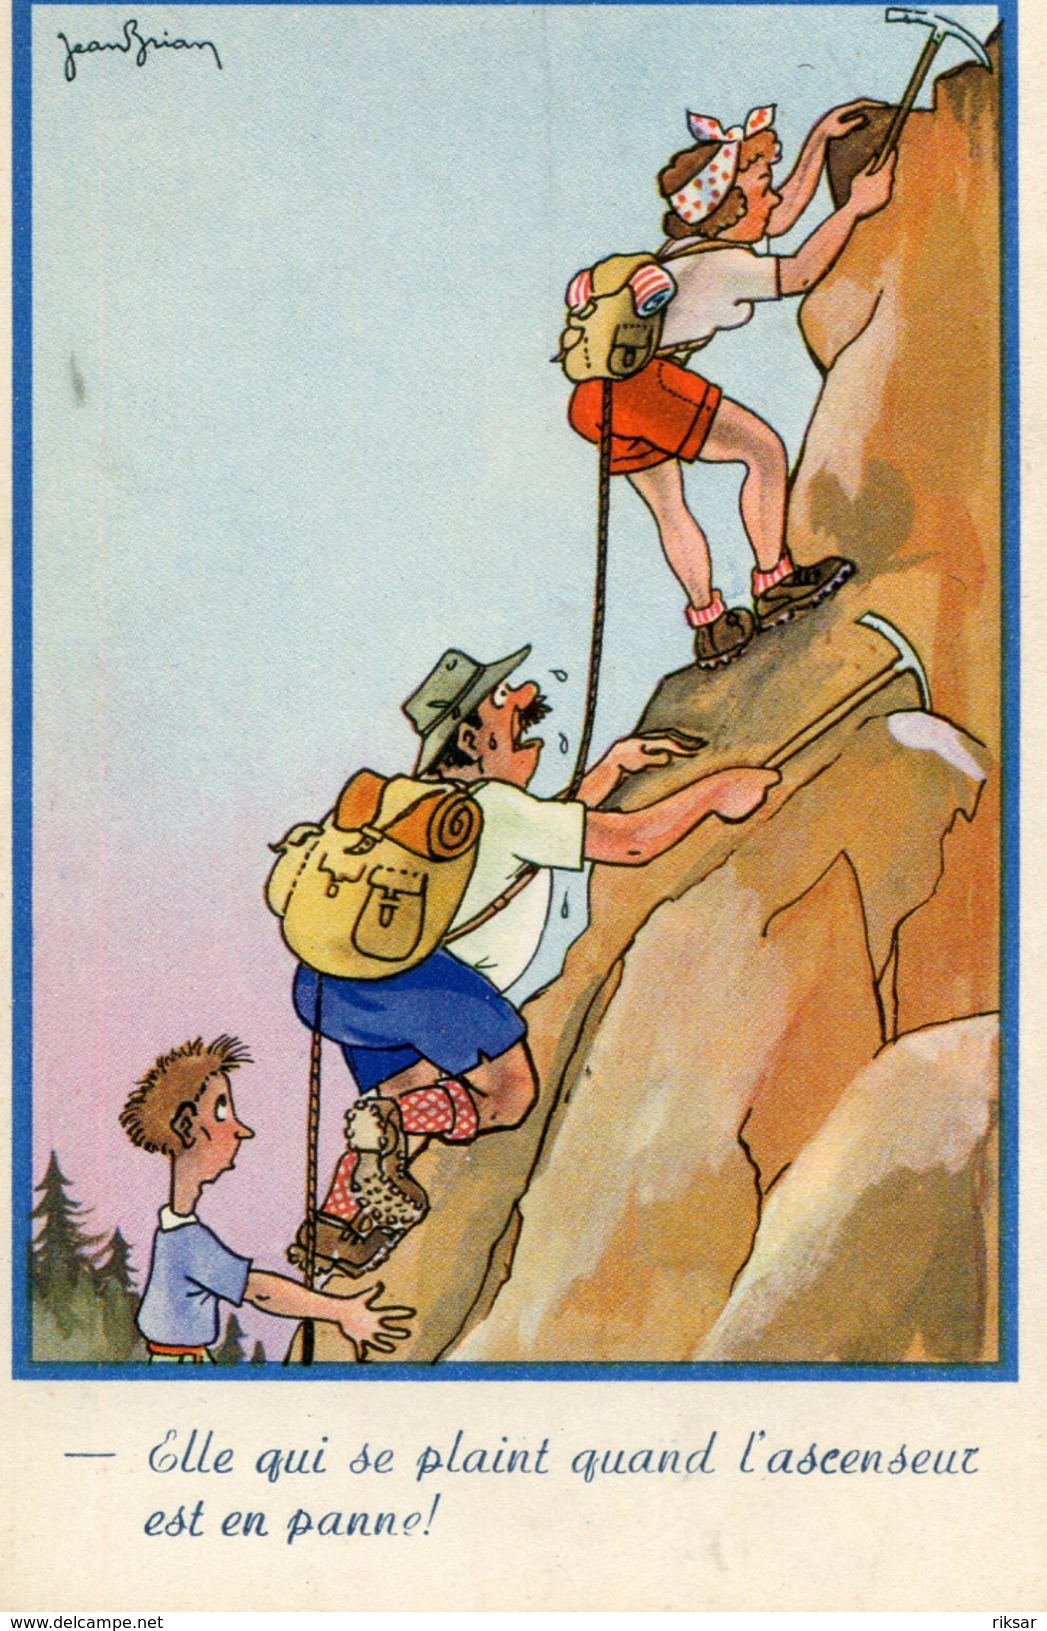 ESCALADE - Climbing